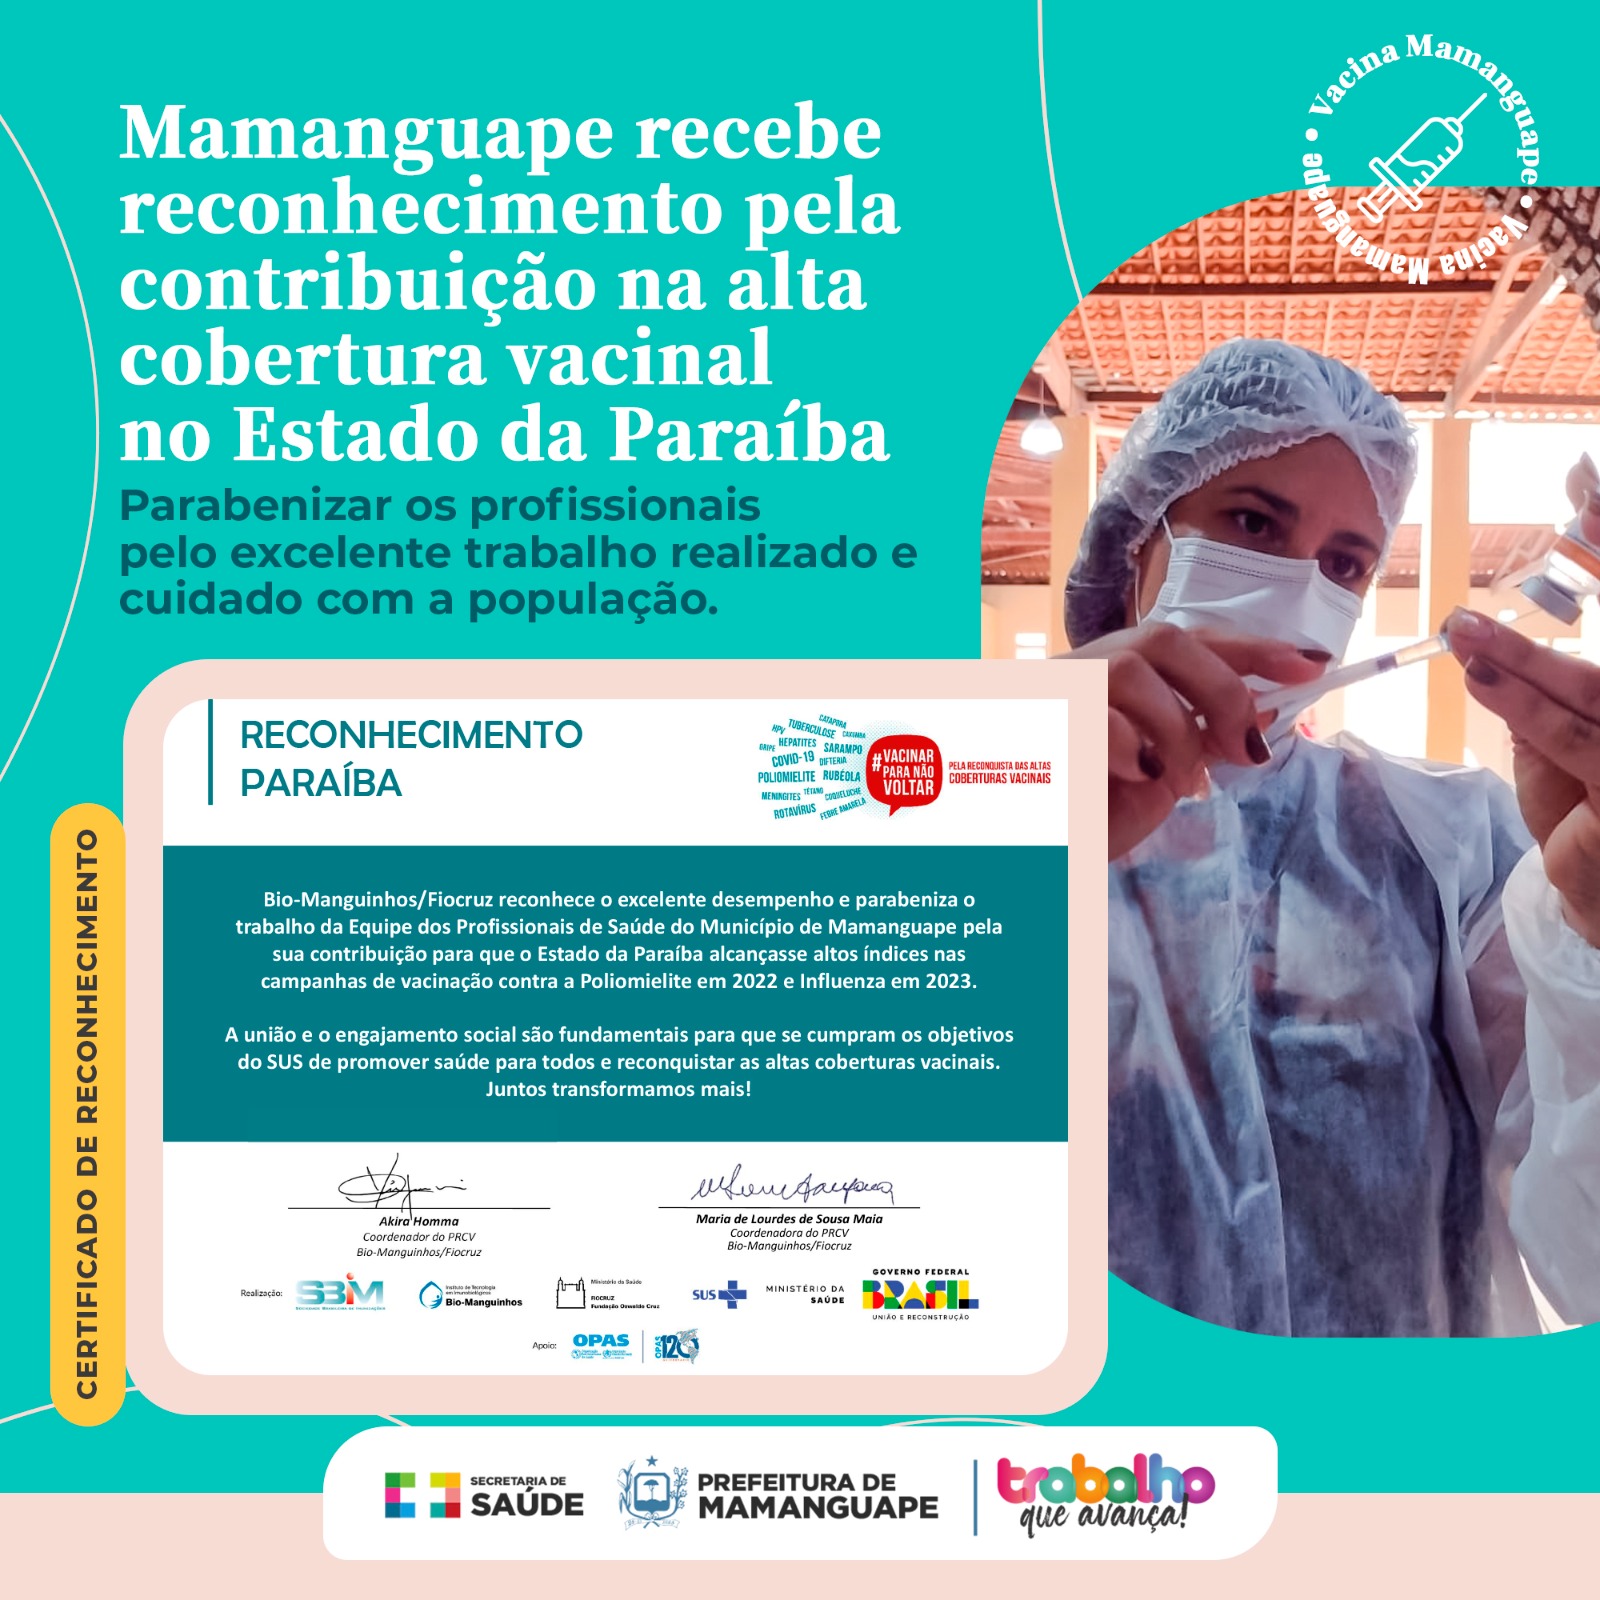 Mamanguape recebe reconhecimento pela alta cobertura vacinal desenvolvida na Paraíba